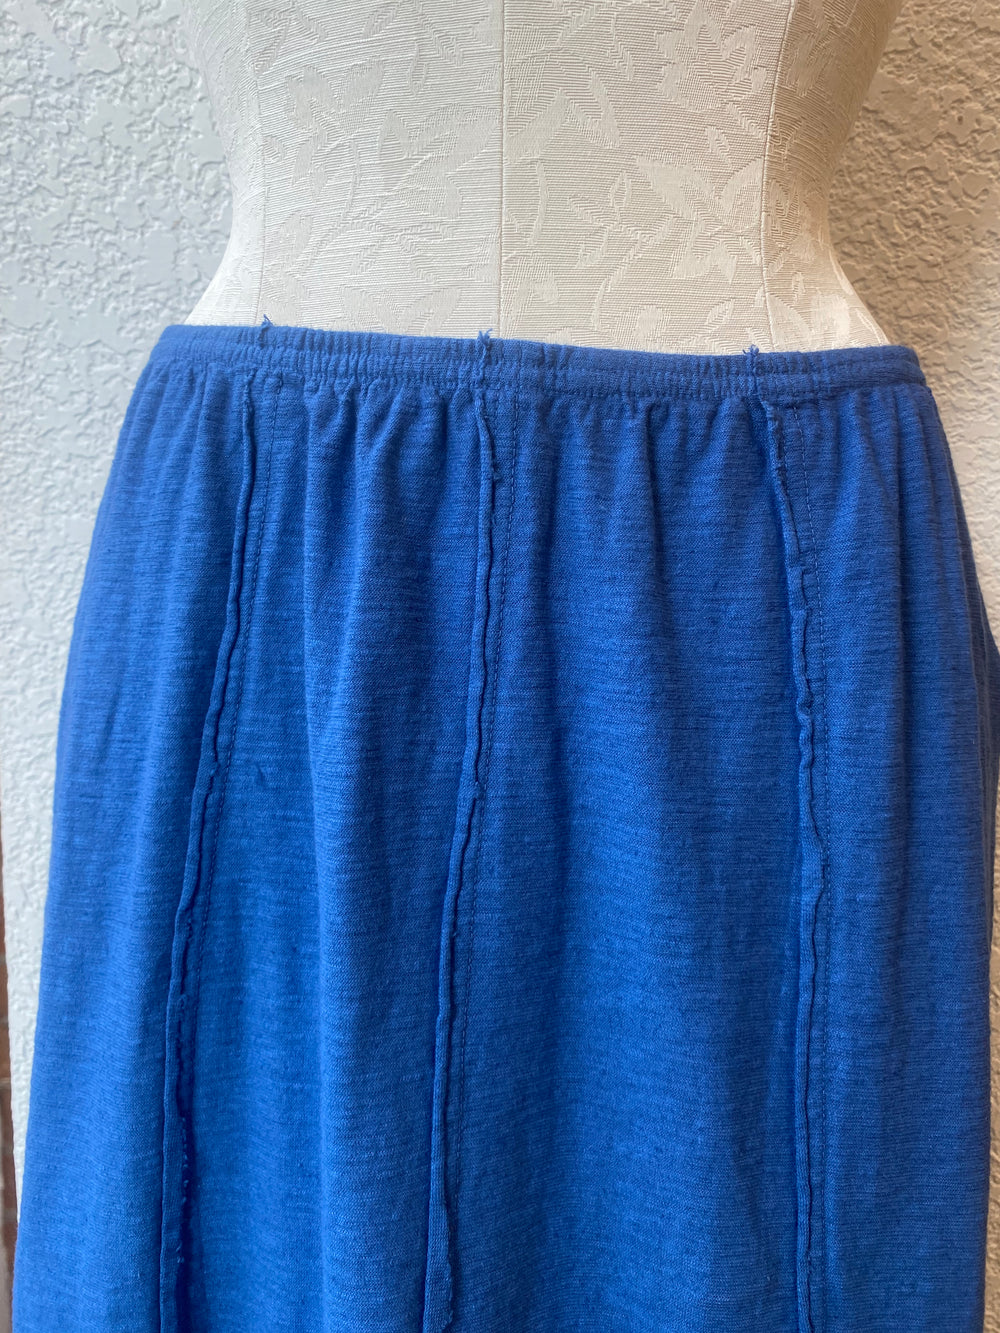 Cut Loose skirt, seamed panels linen blend (2 colors) SALE Sizes S, M, L